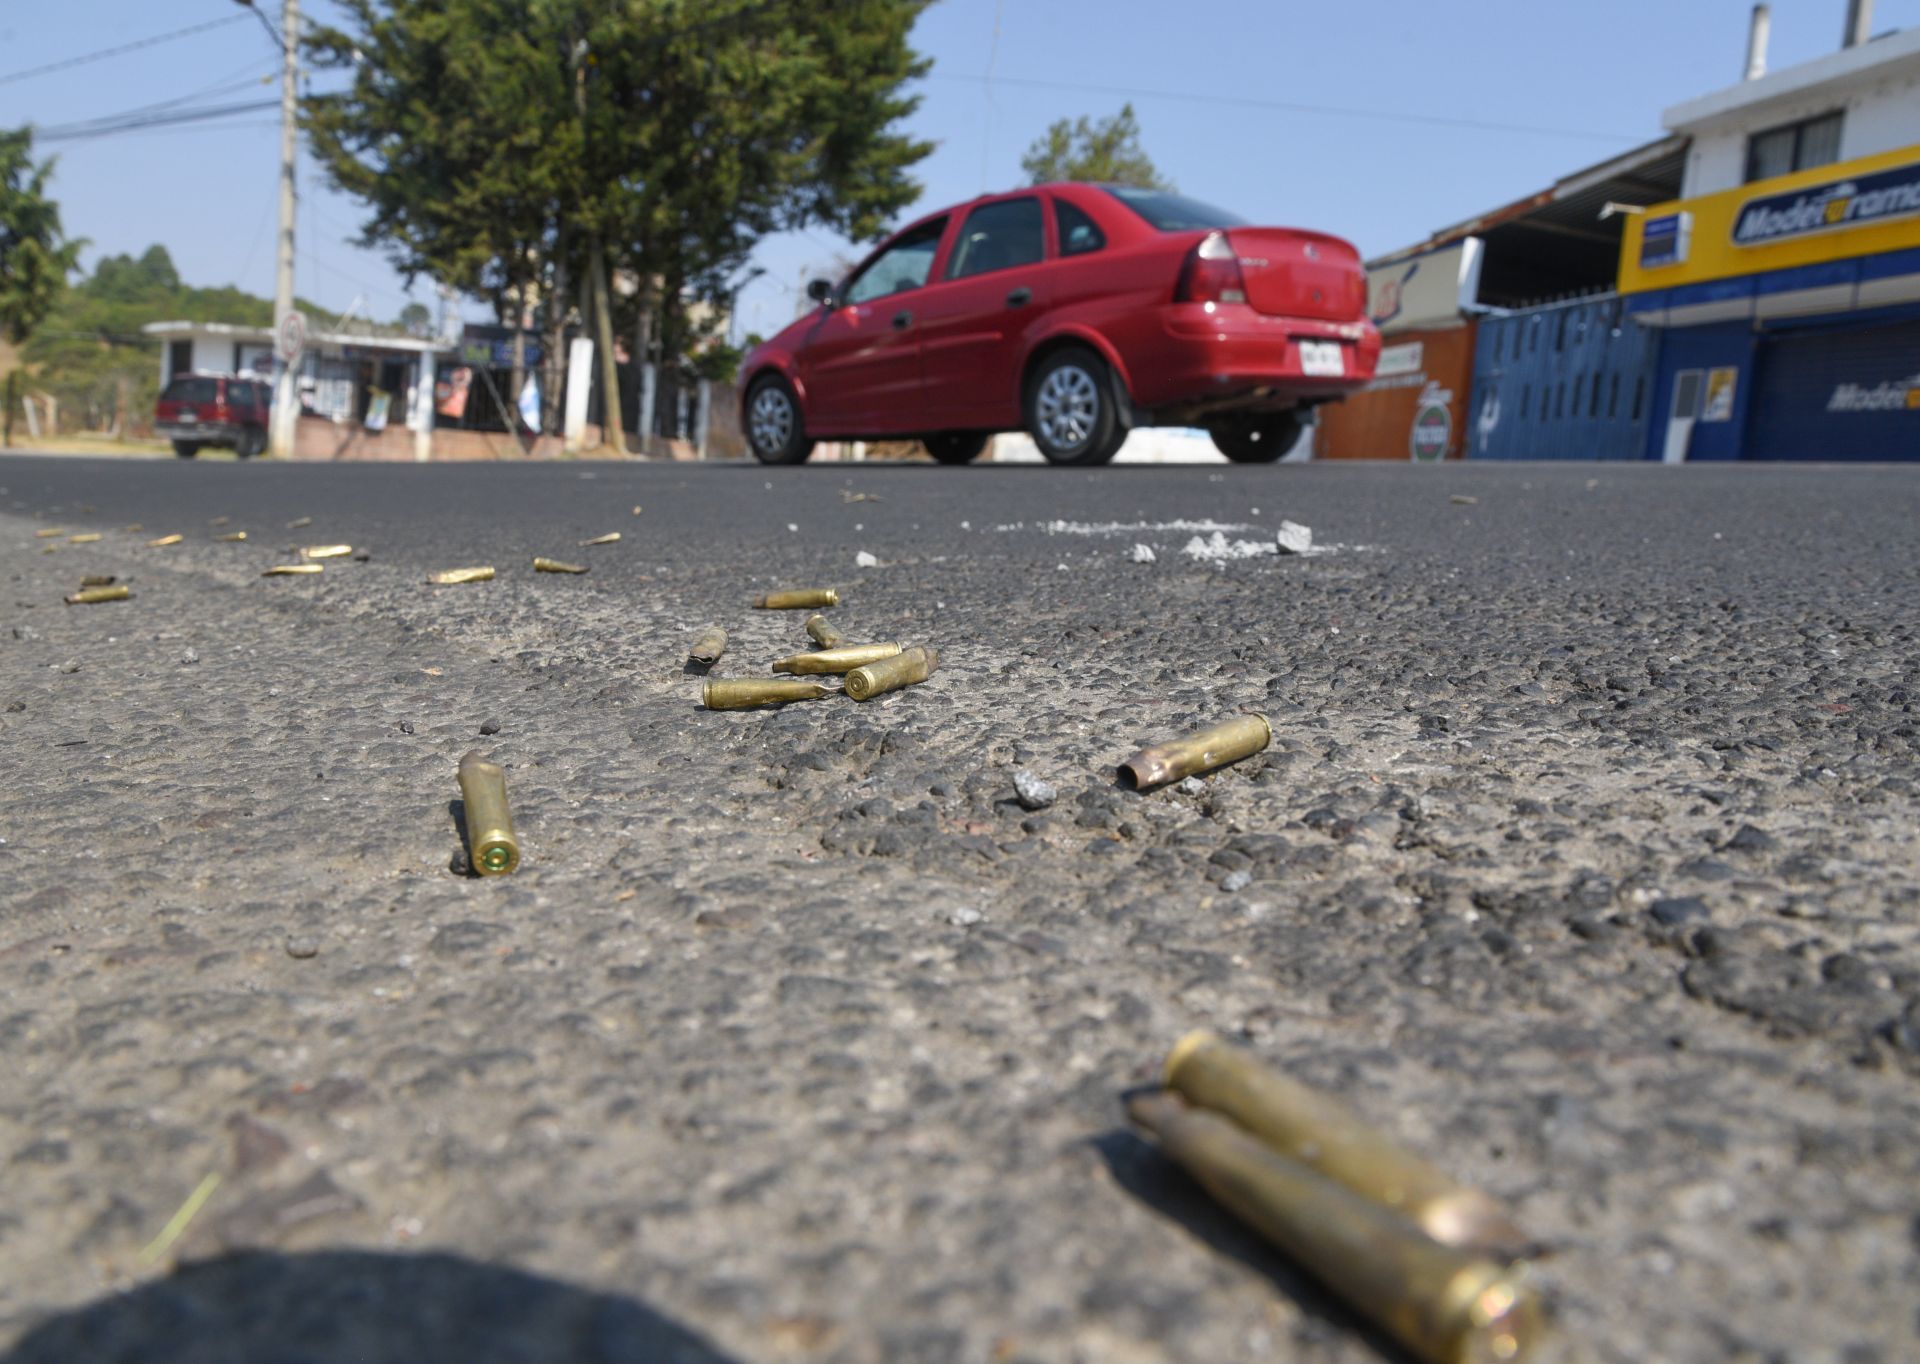 Balacera en Nuevo León deja 5 muertos; hay una persona detenida